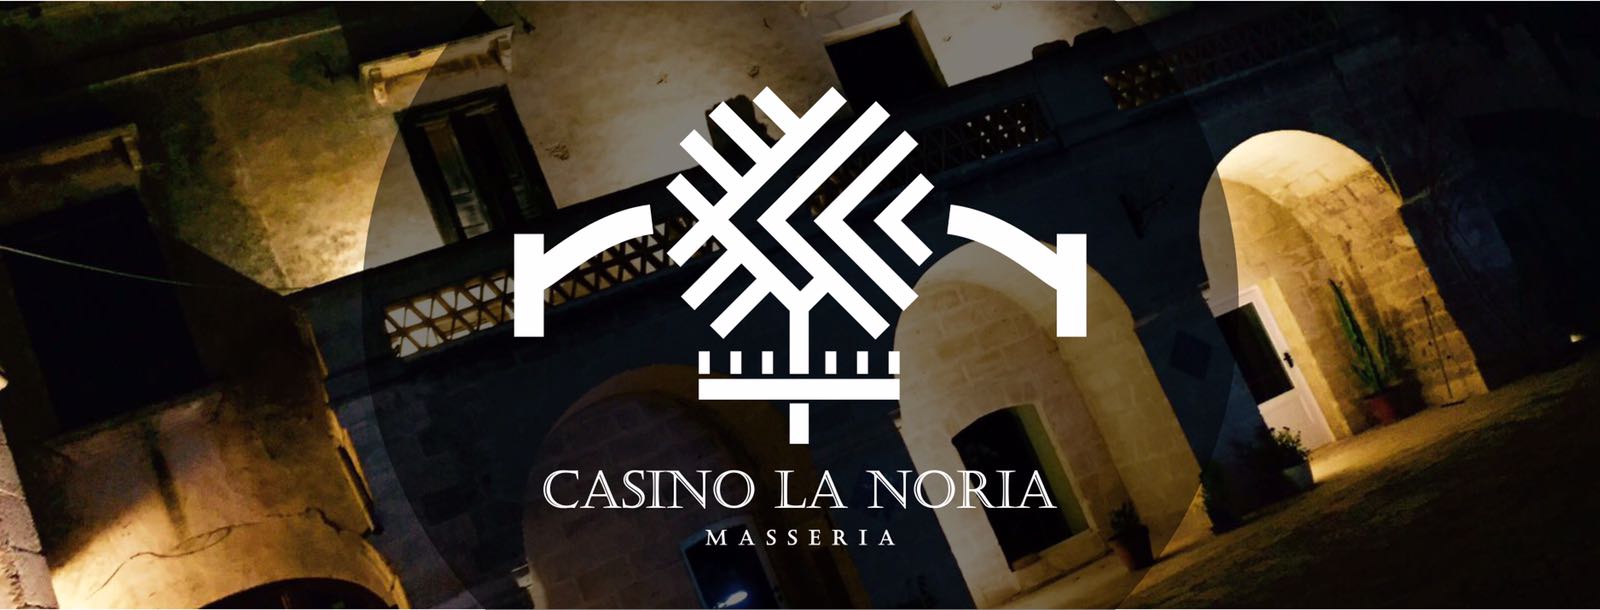 Inaugurazione @Casino La Noria